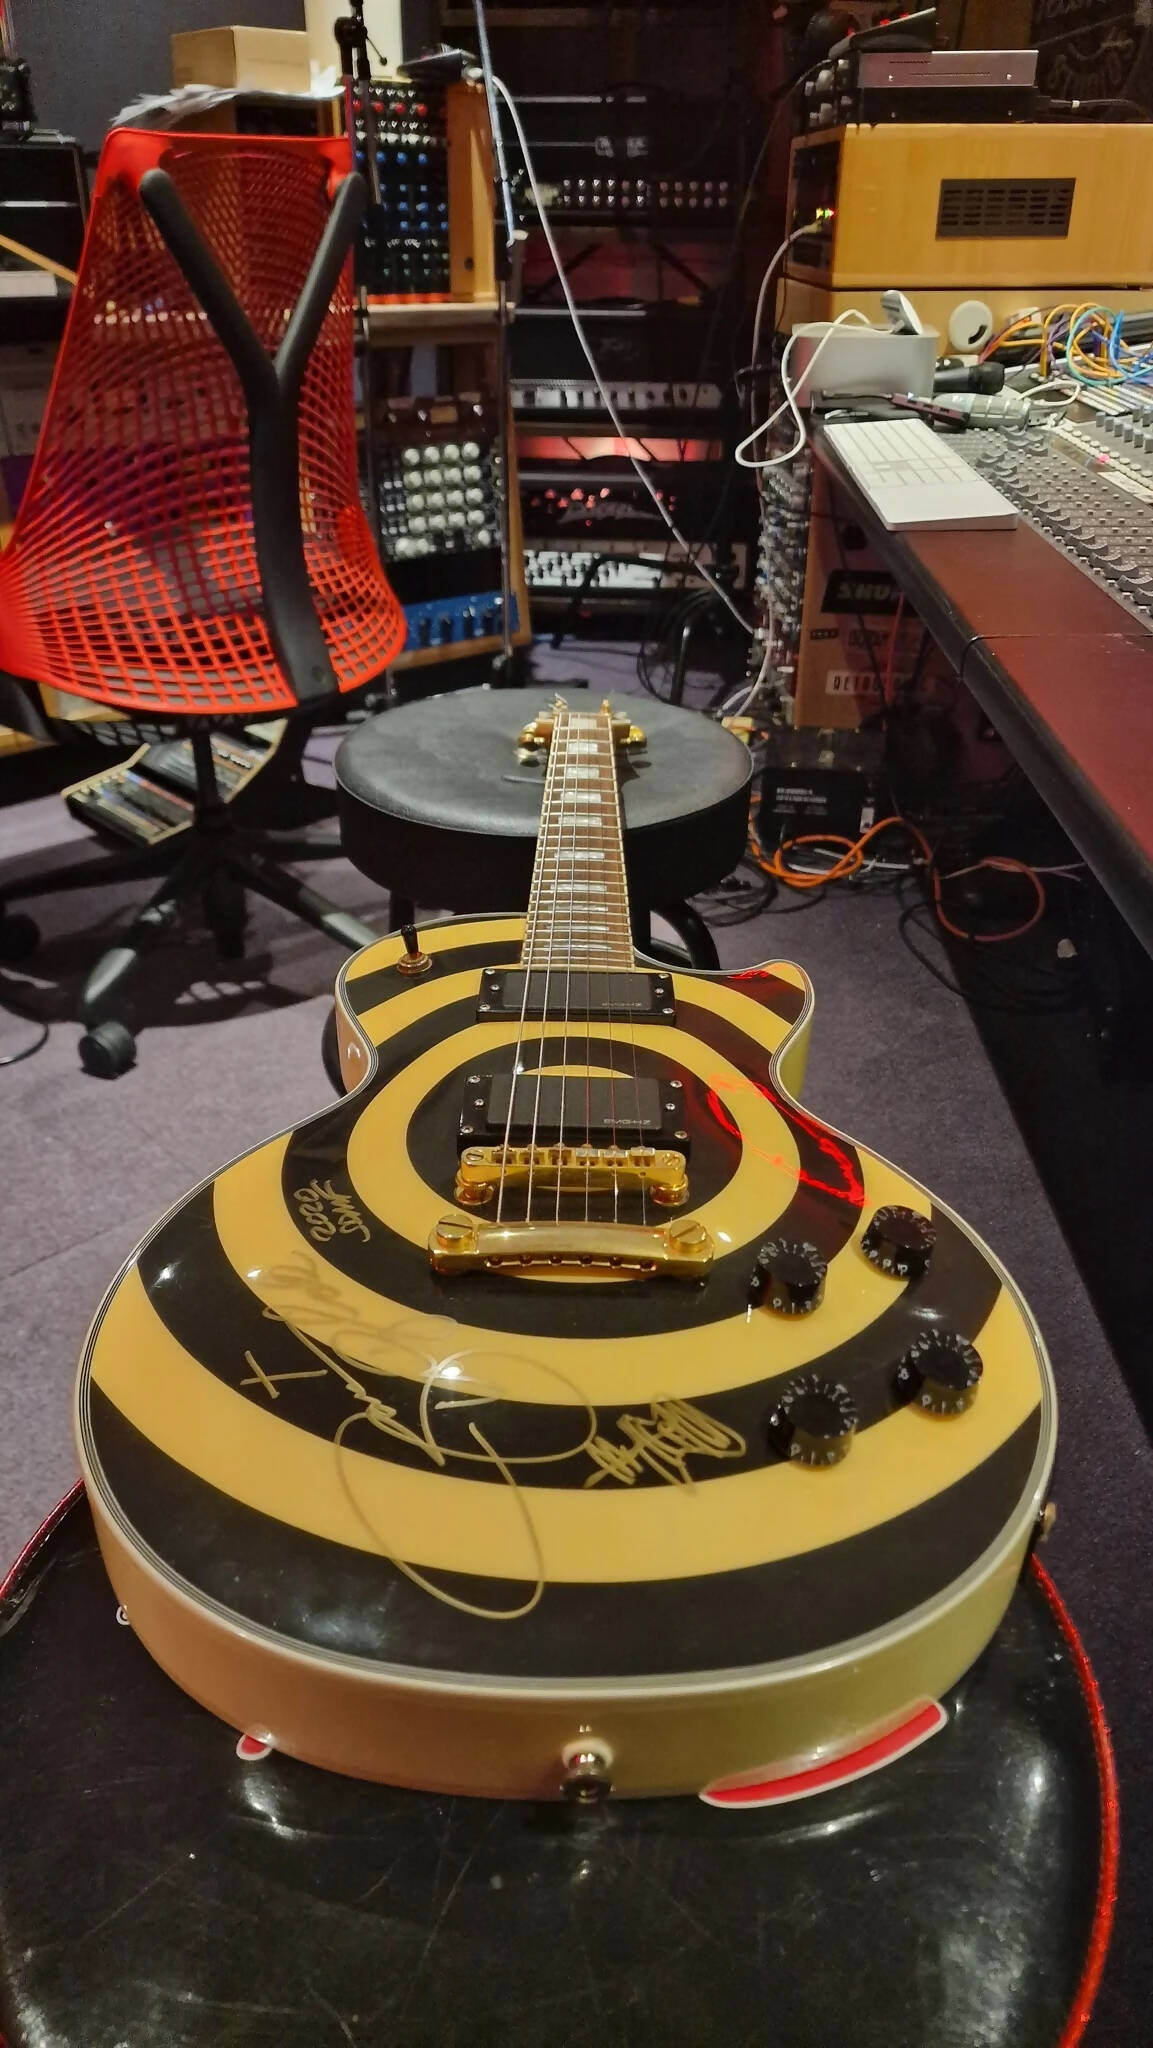 Gibson Epiphone Zakk Wylde Les Paul Custom Bullseye Signature Guitar Artist Signed by Zakk Wylde